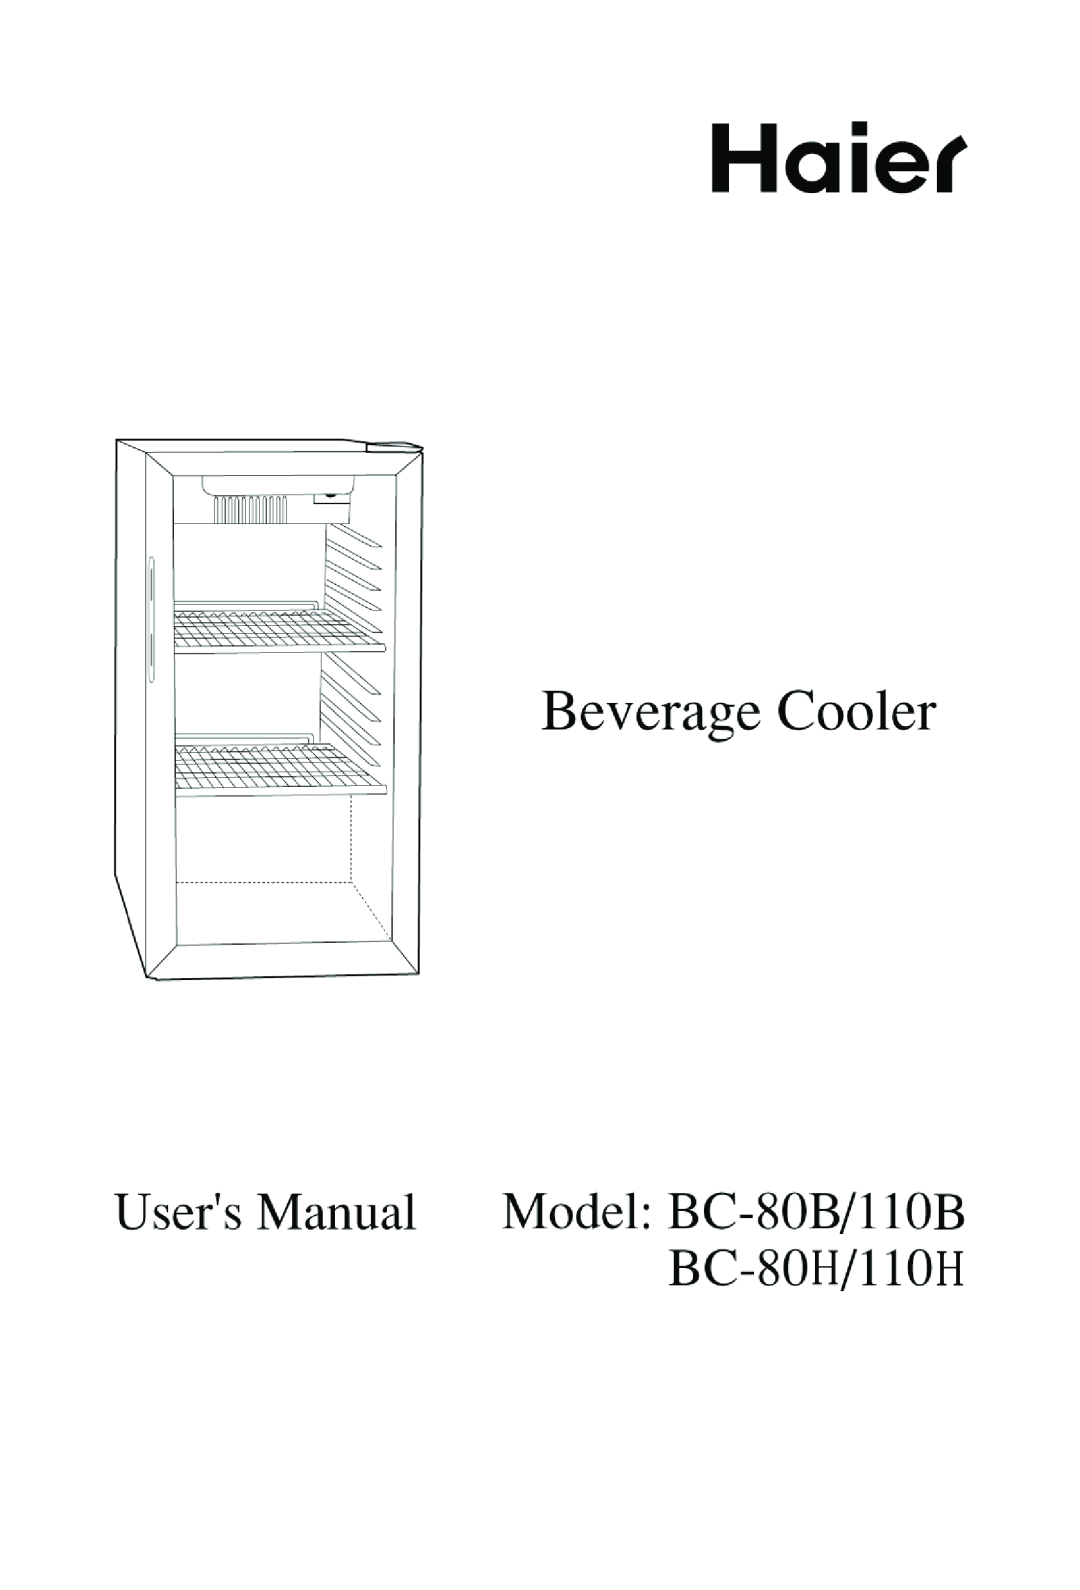 Haier BC-80H/110H manual 